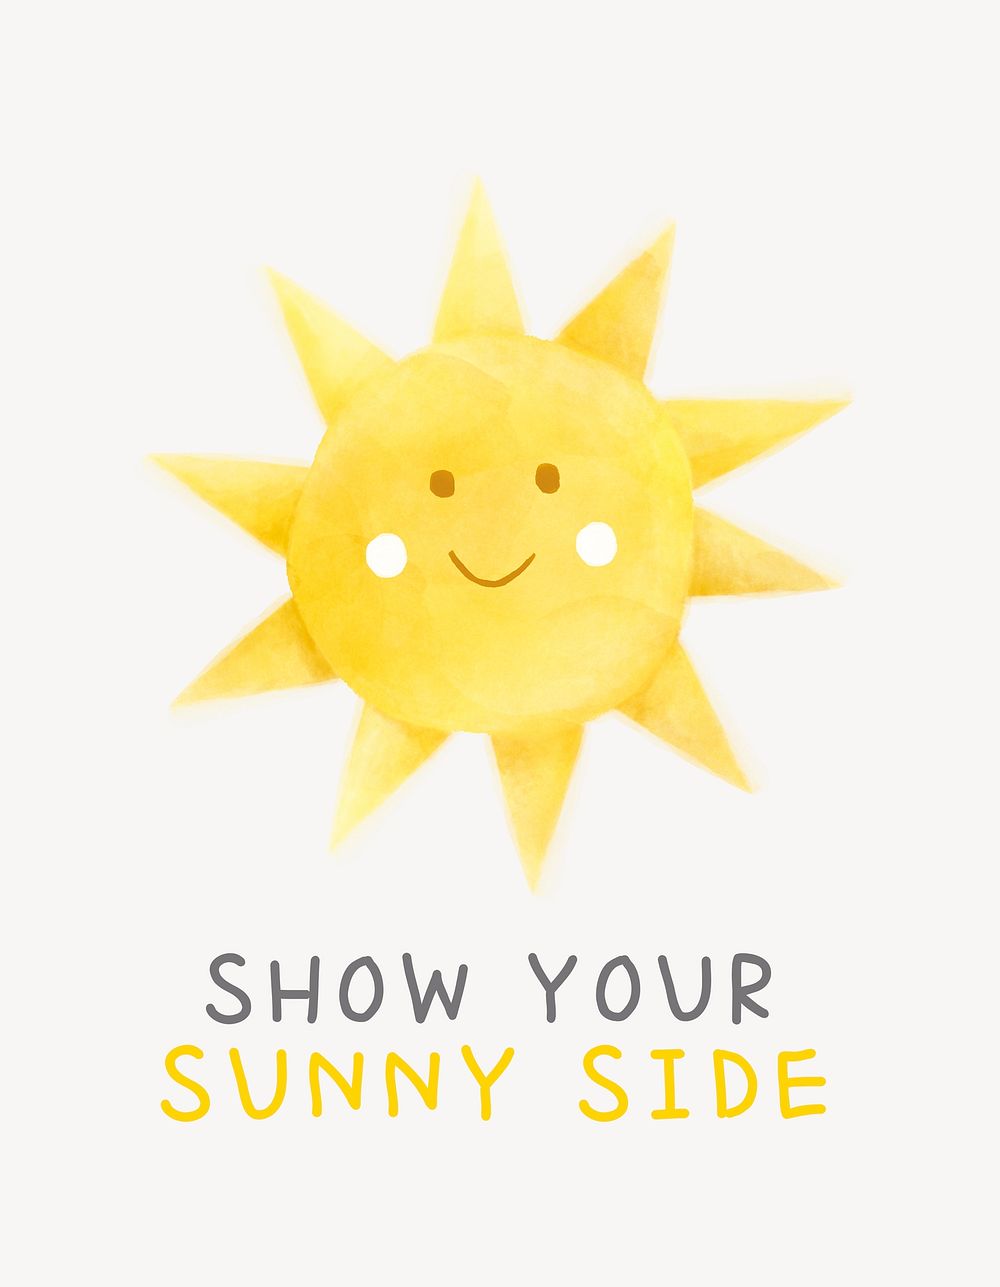 Cute sun flyer template, watercolor design psd